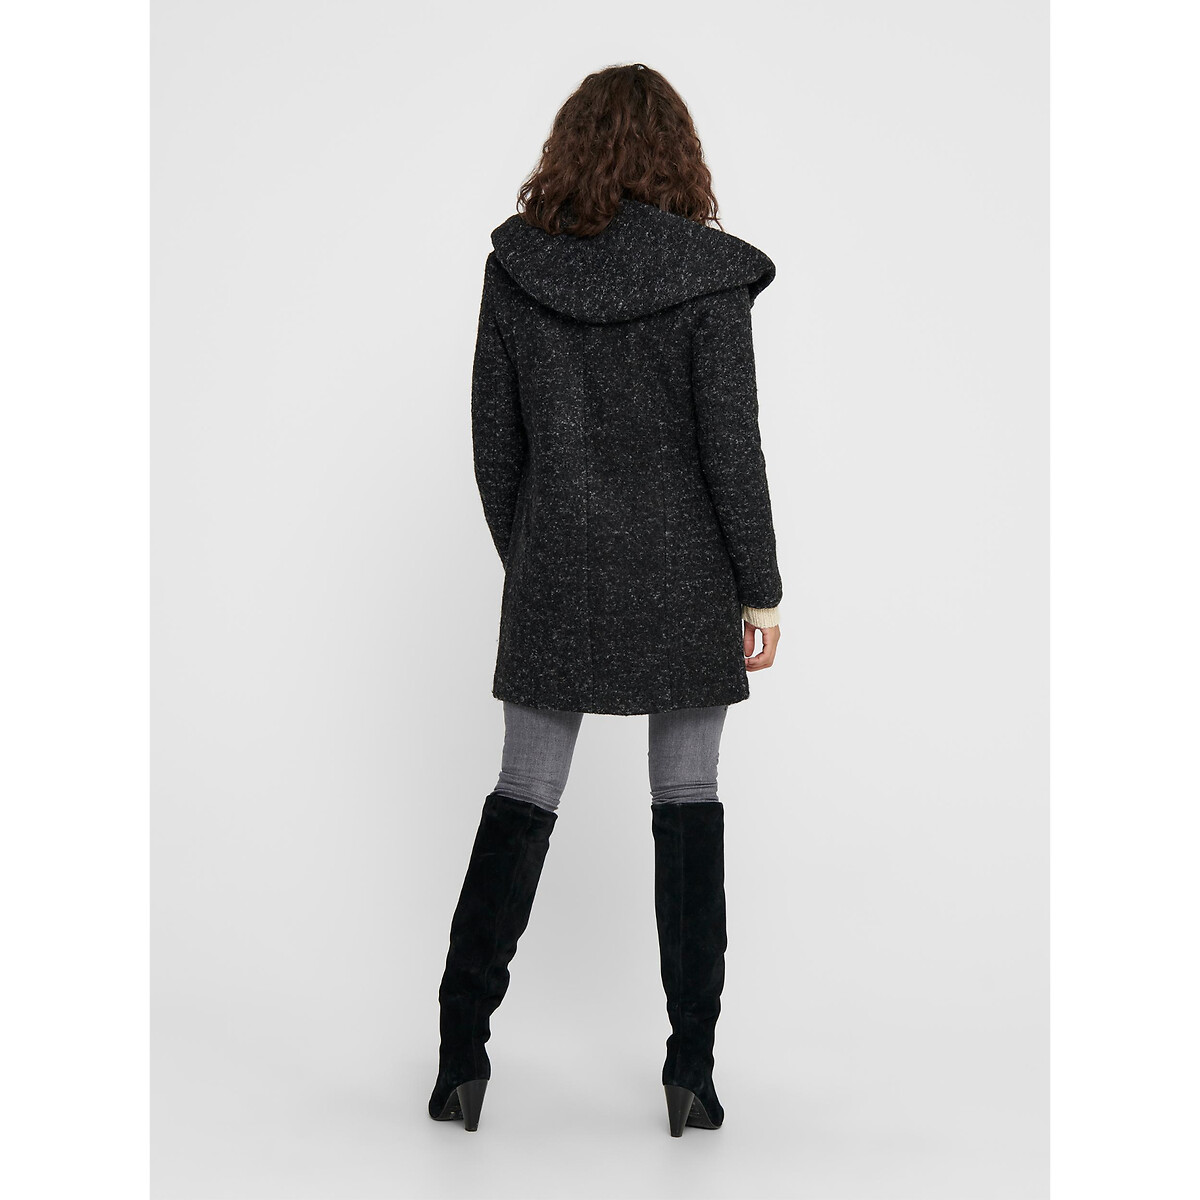 Пальто La Redoute Длинное из малой пряжи с капюшоном XS черный, размер XS - фото 5